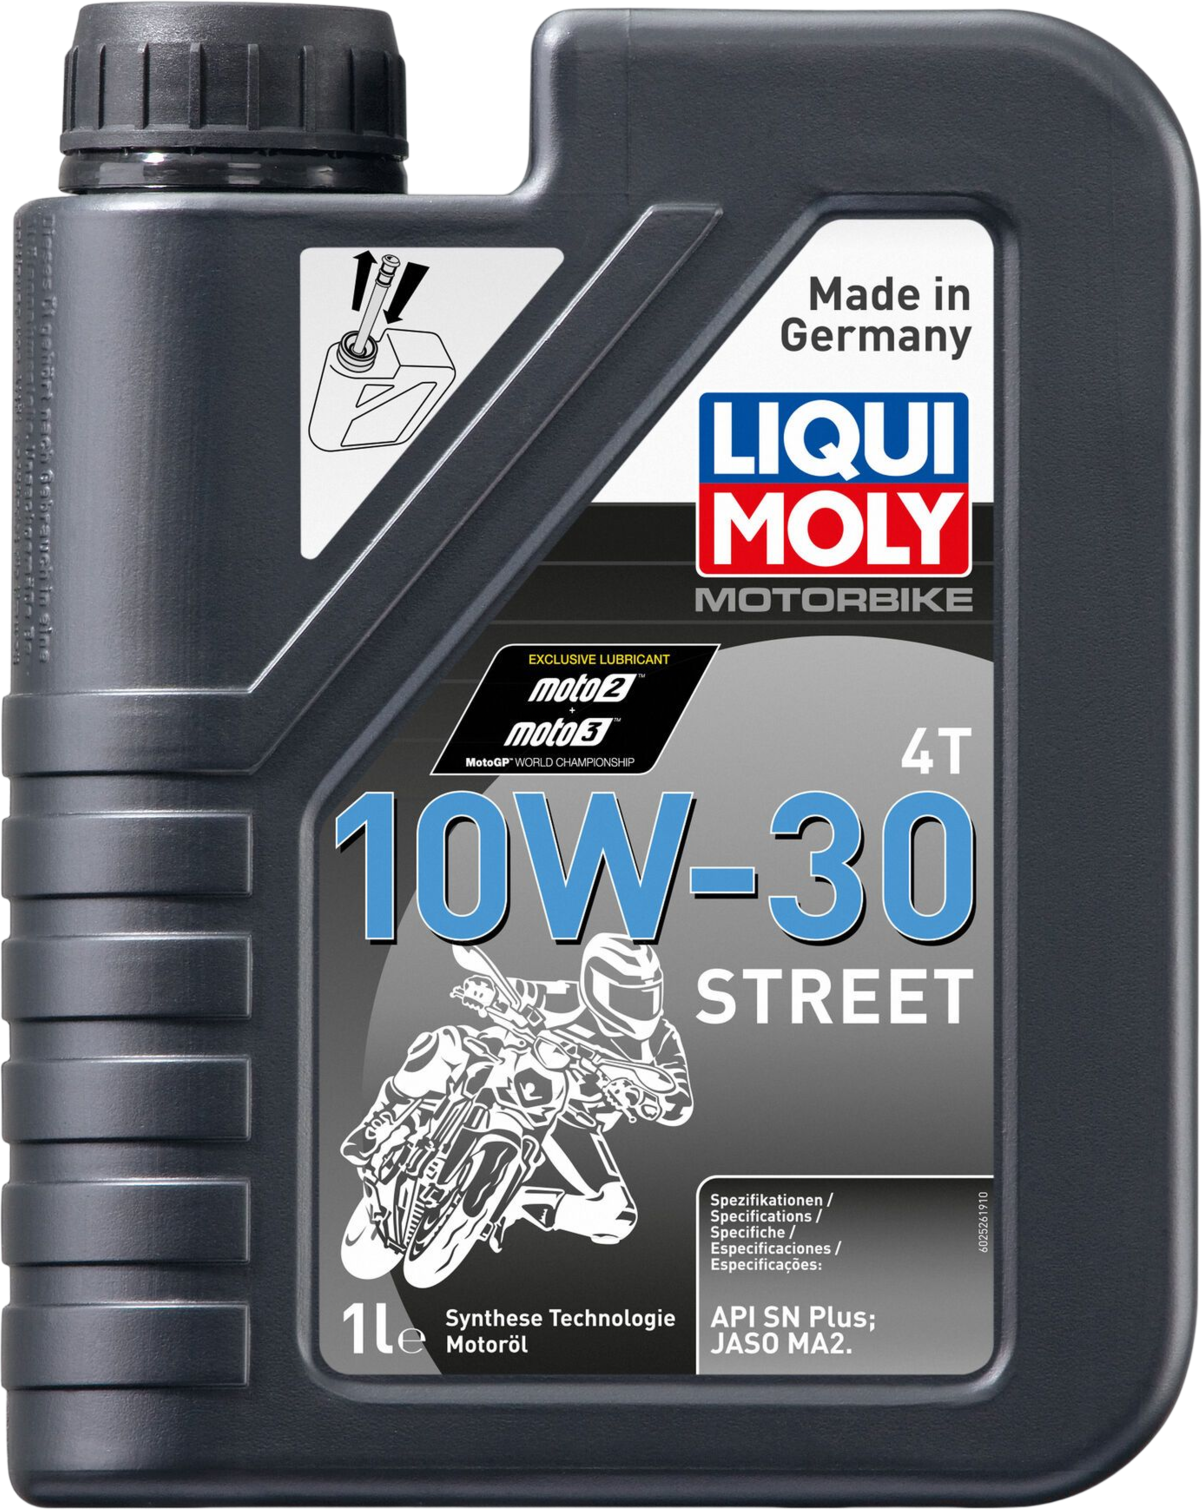 Liqui Moly Motorbike 4T 10W-30 Street, 1 lt